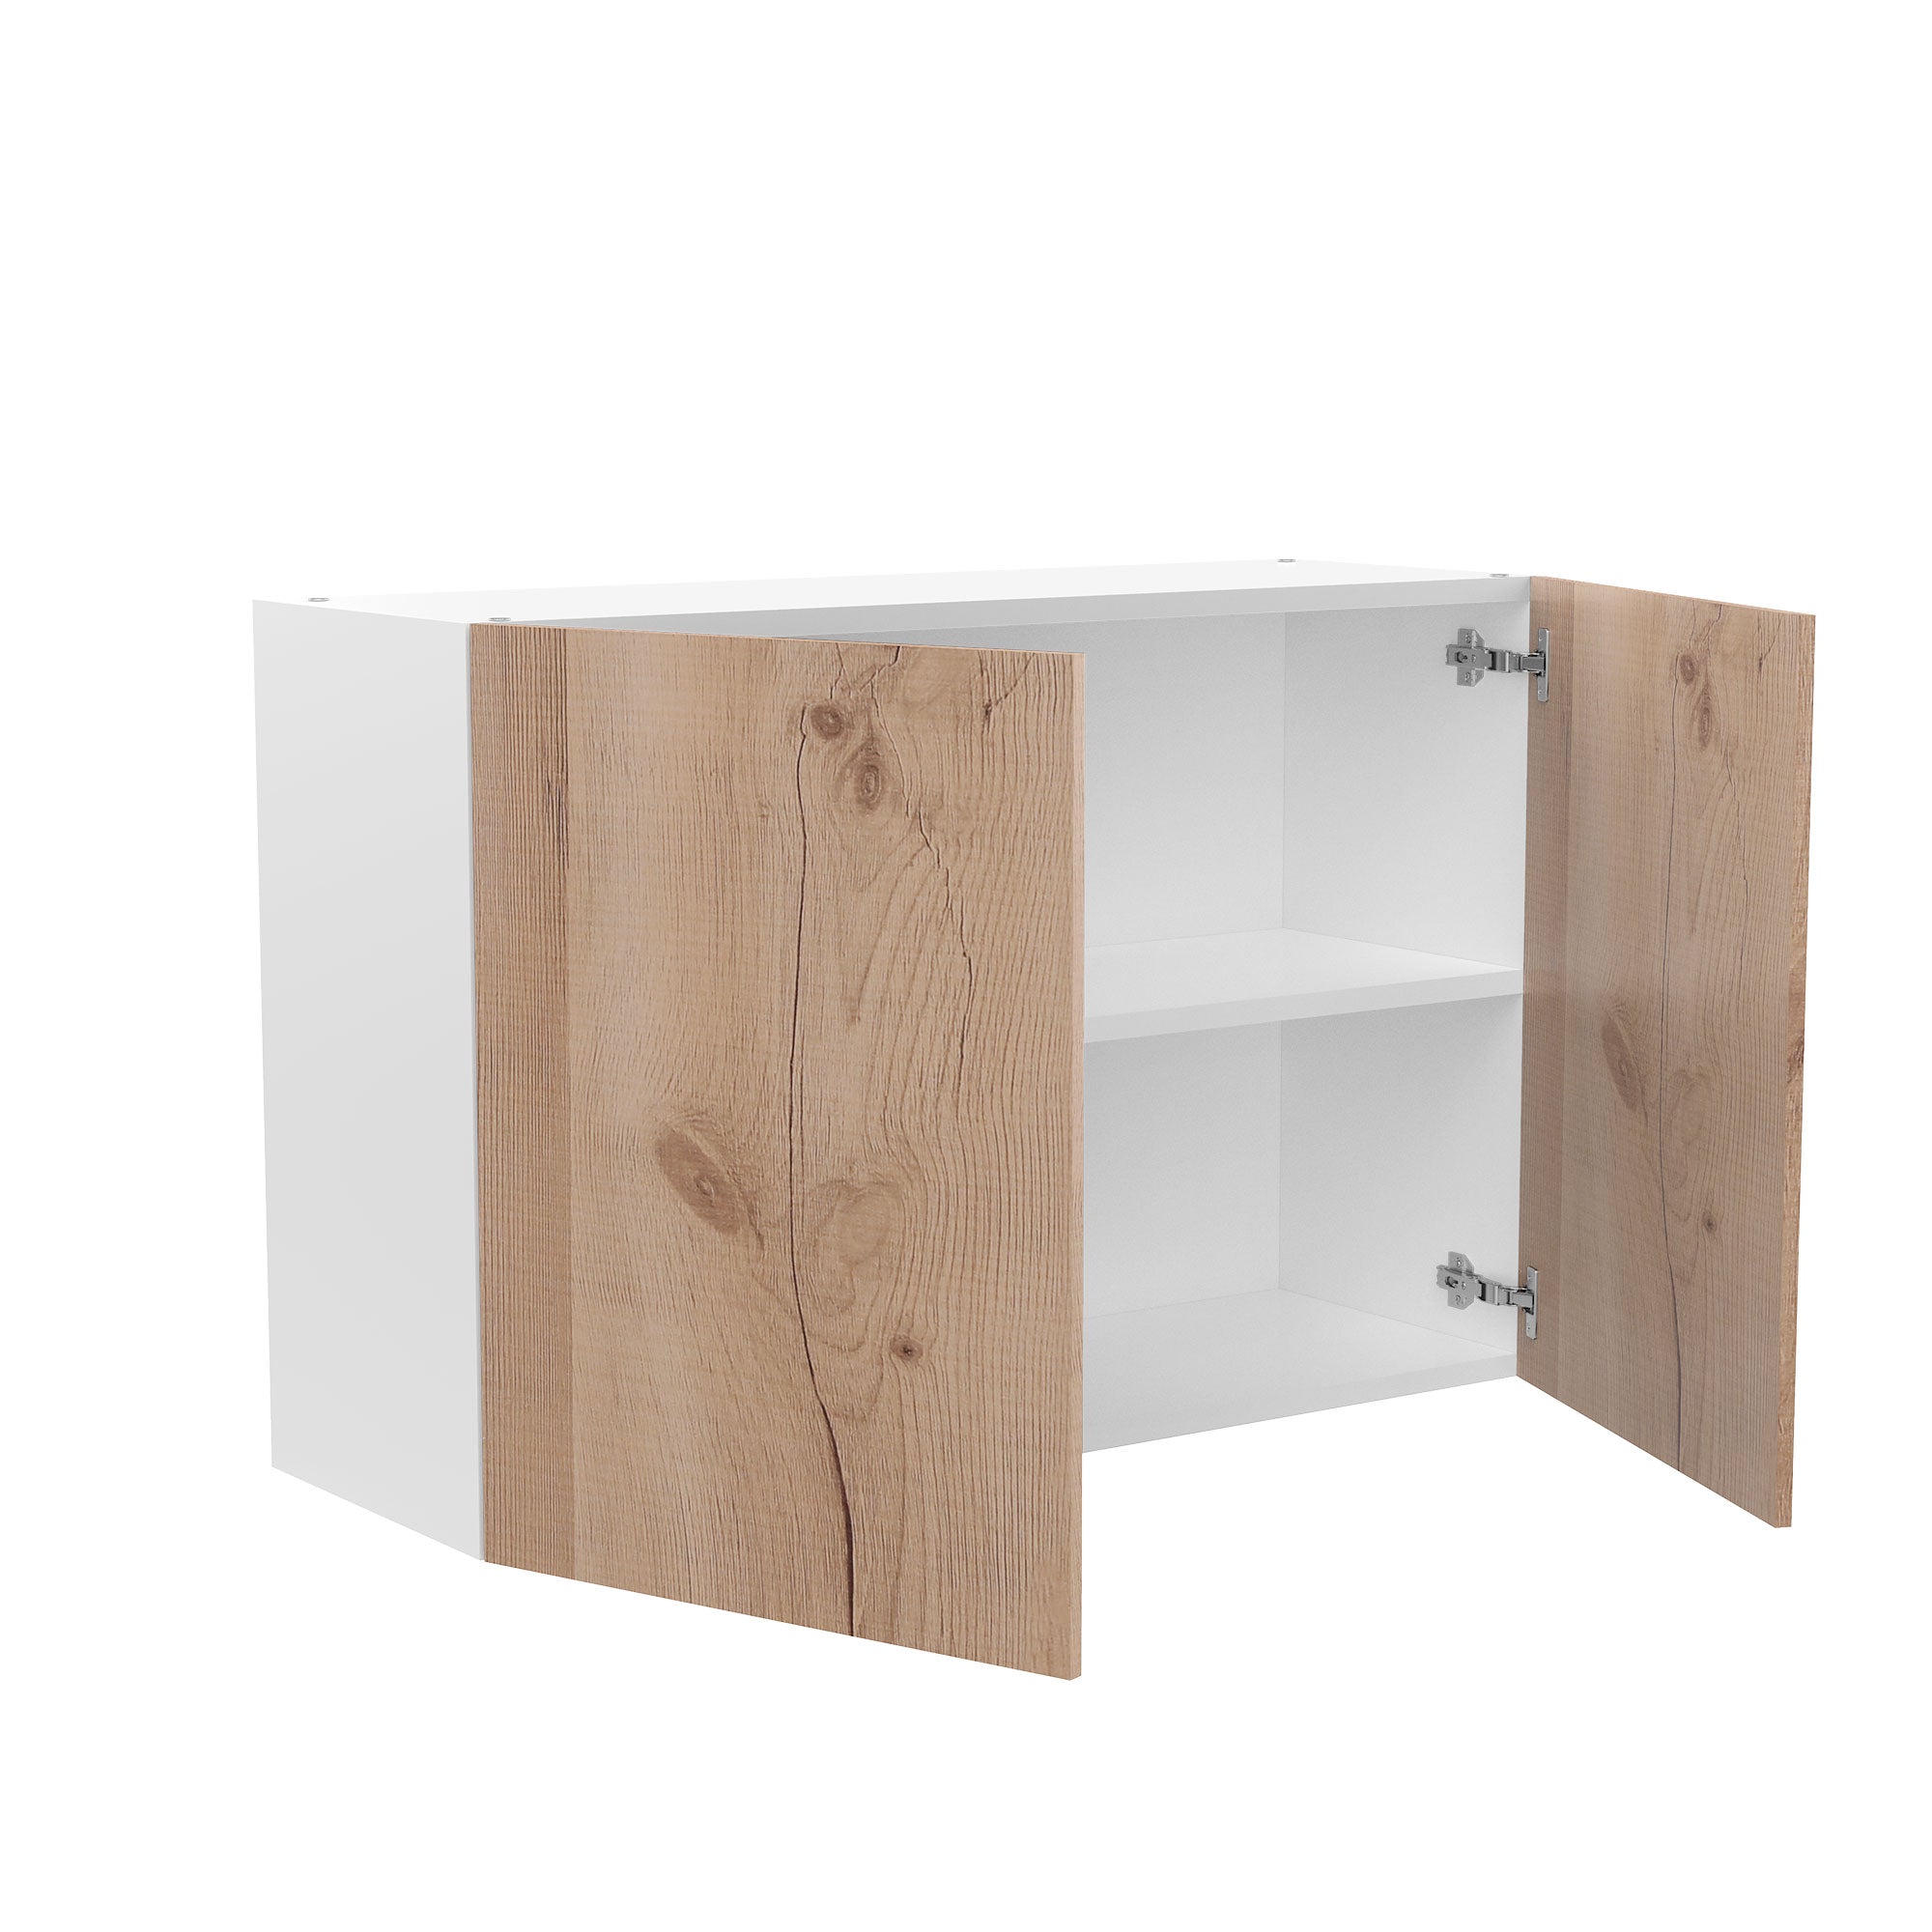 RTA - Rustic Oak - Double Door Wall Cabinets | 36"W x 24"H x 12"D